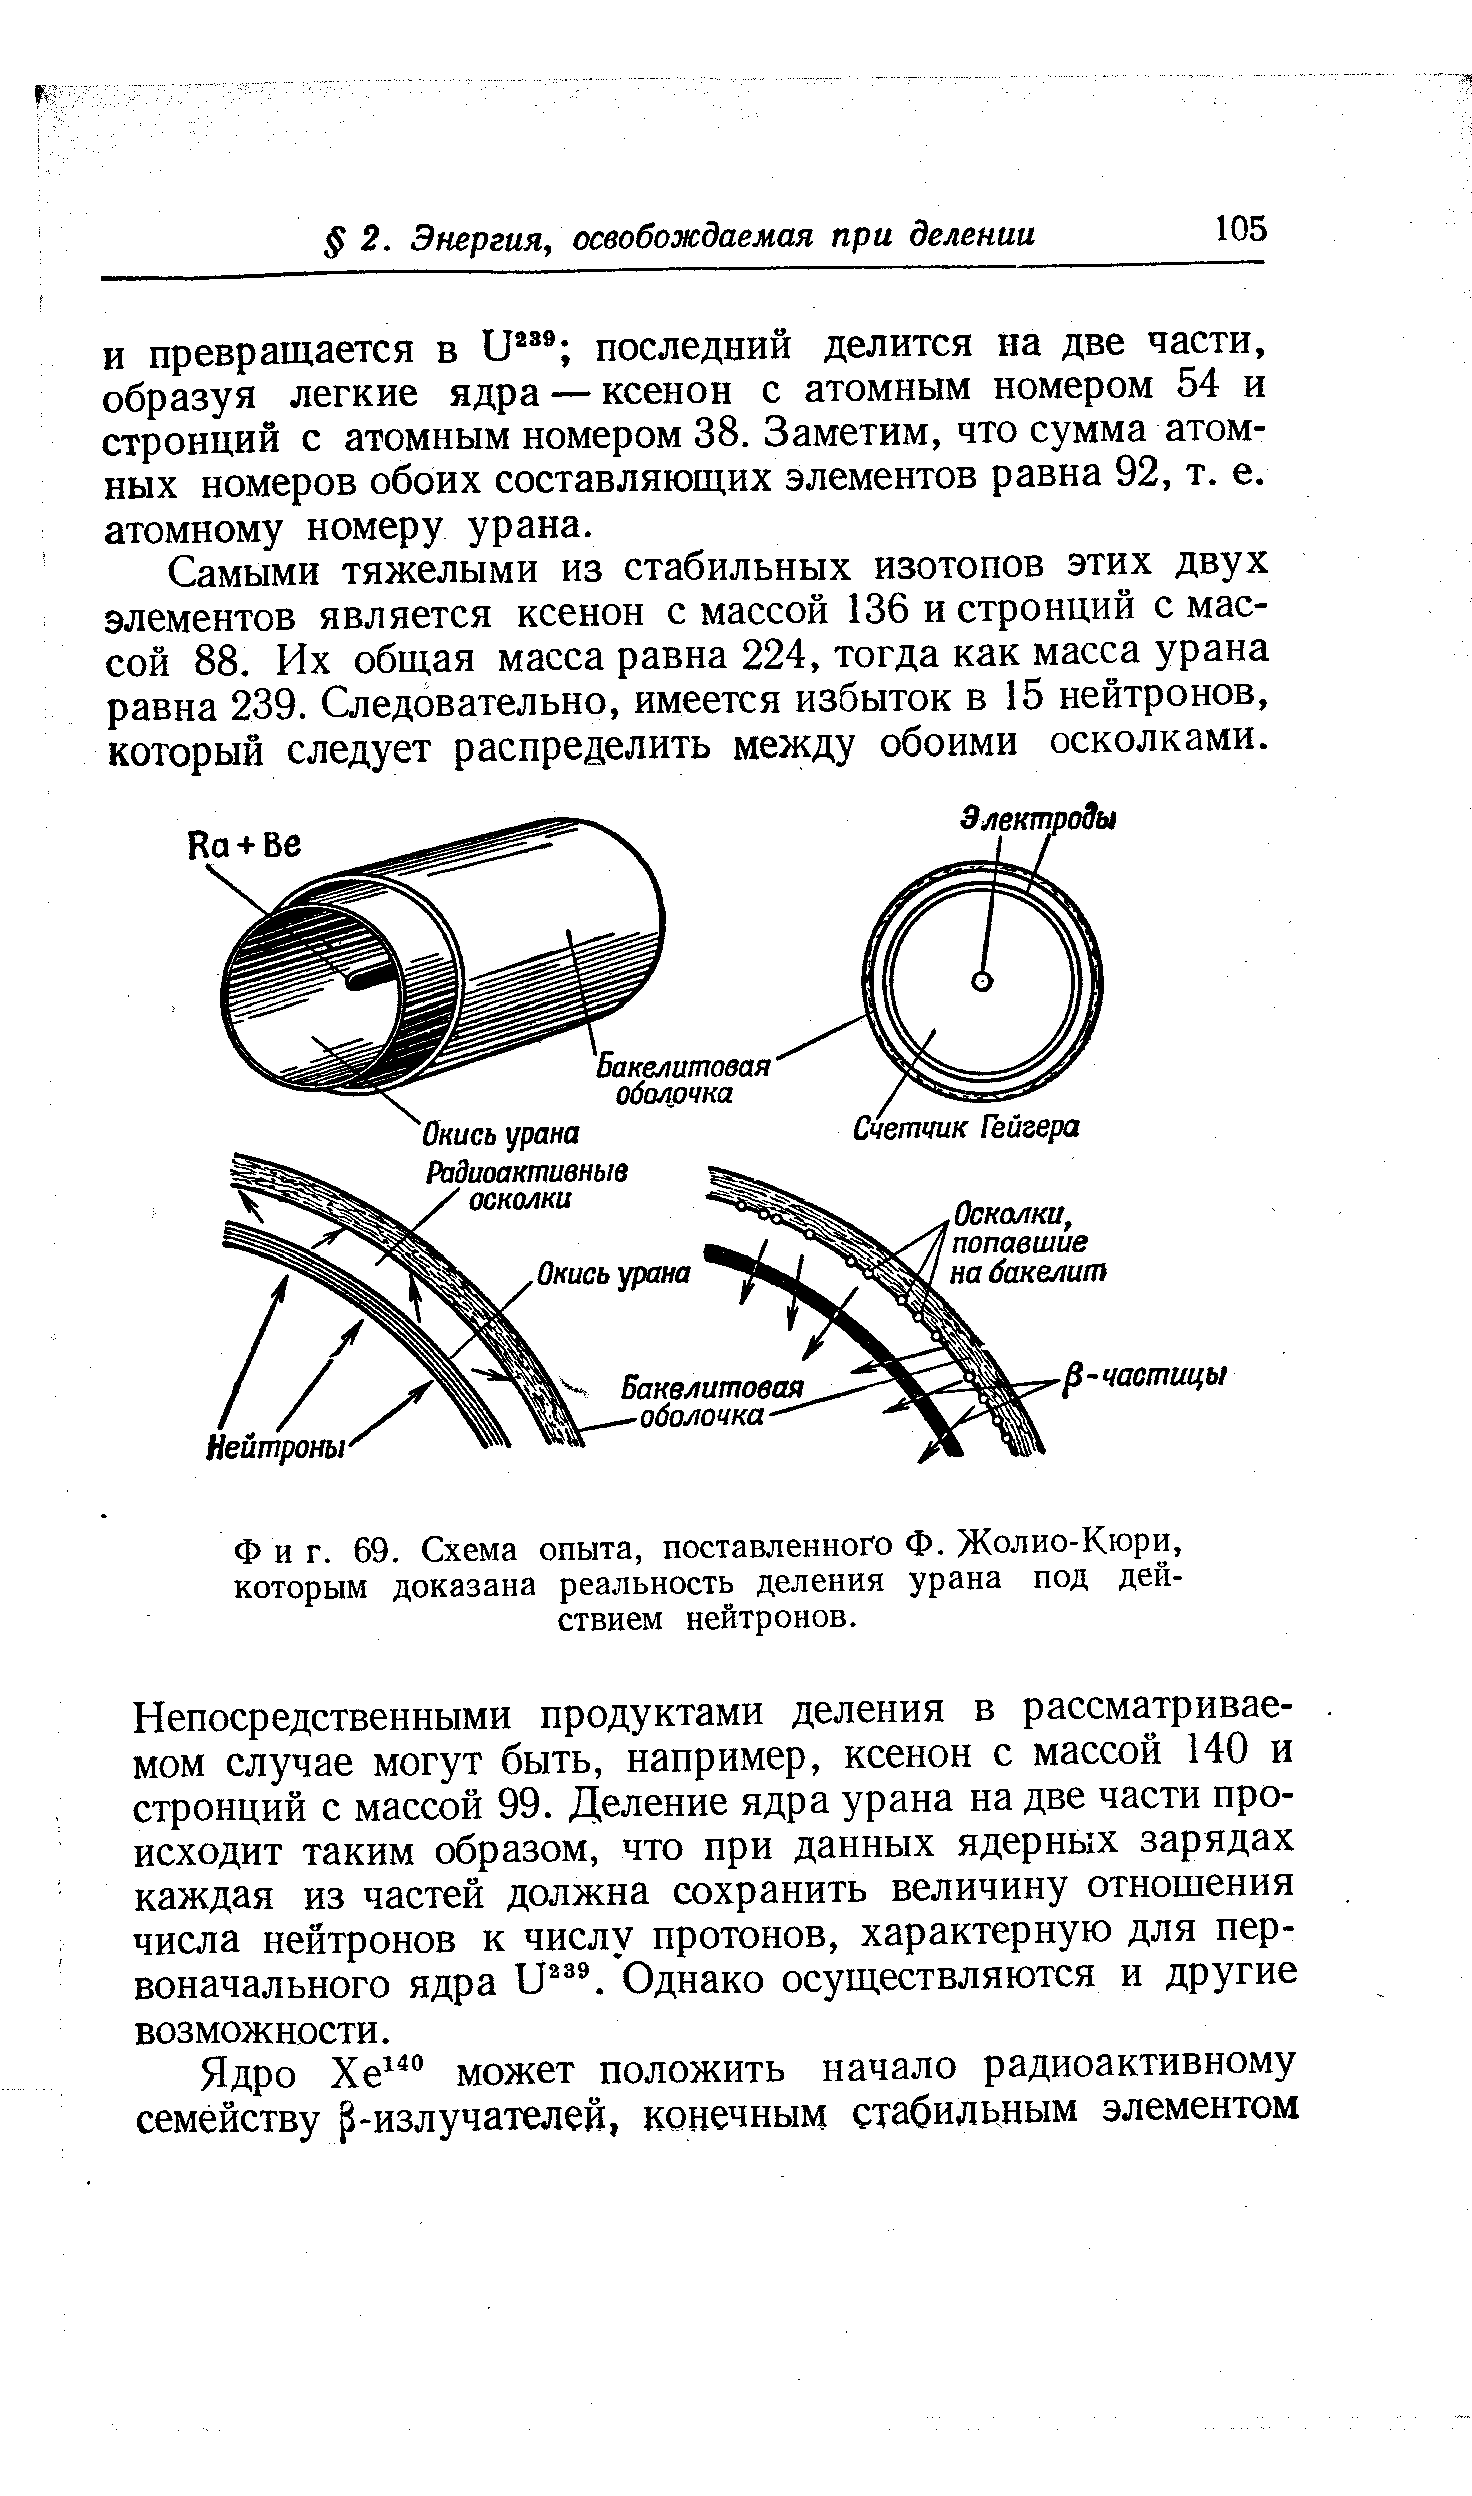 Фиг. 69. Схема опыта, поставленного Ф. Жолио-Кюри, которым доказана реальность деления урана под действием нейтронов.
